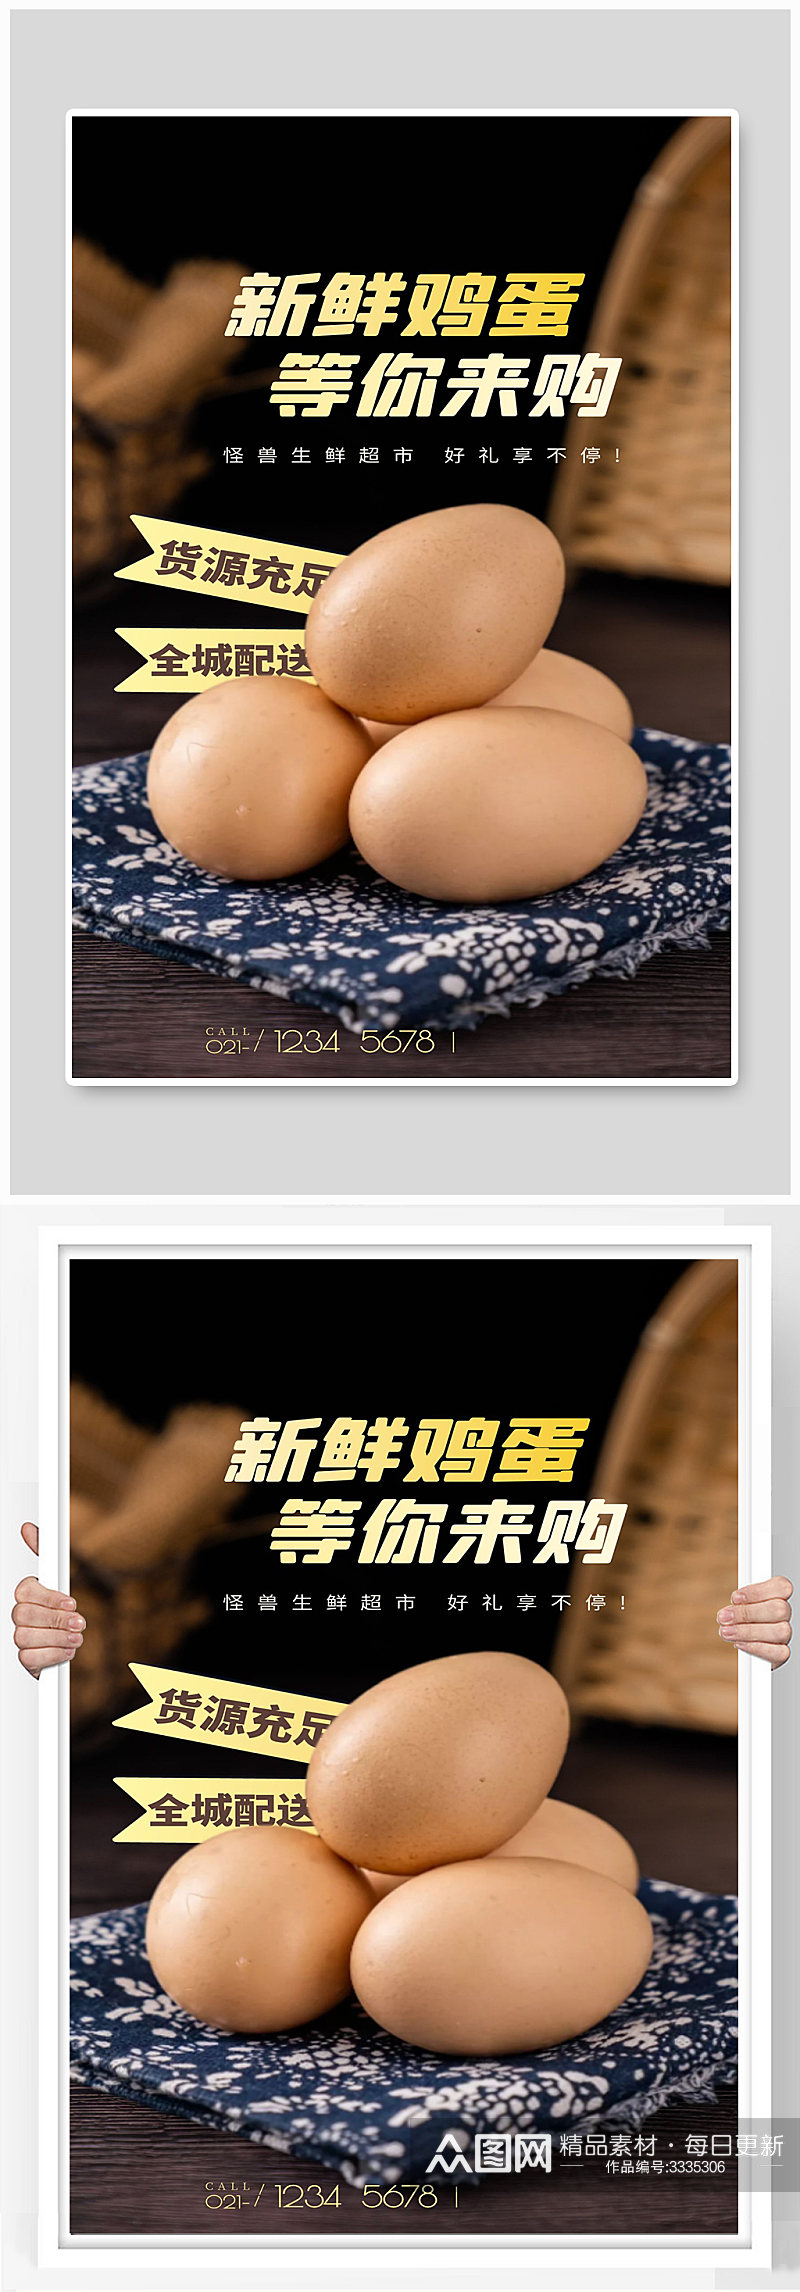 新鲜鸡蛋宣传海报设计素材